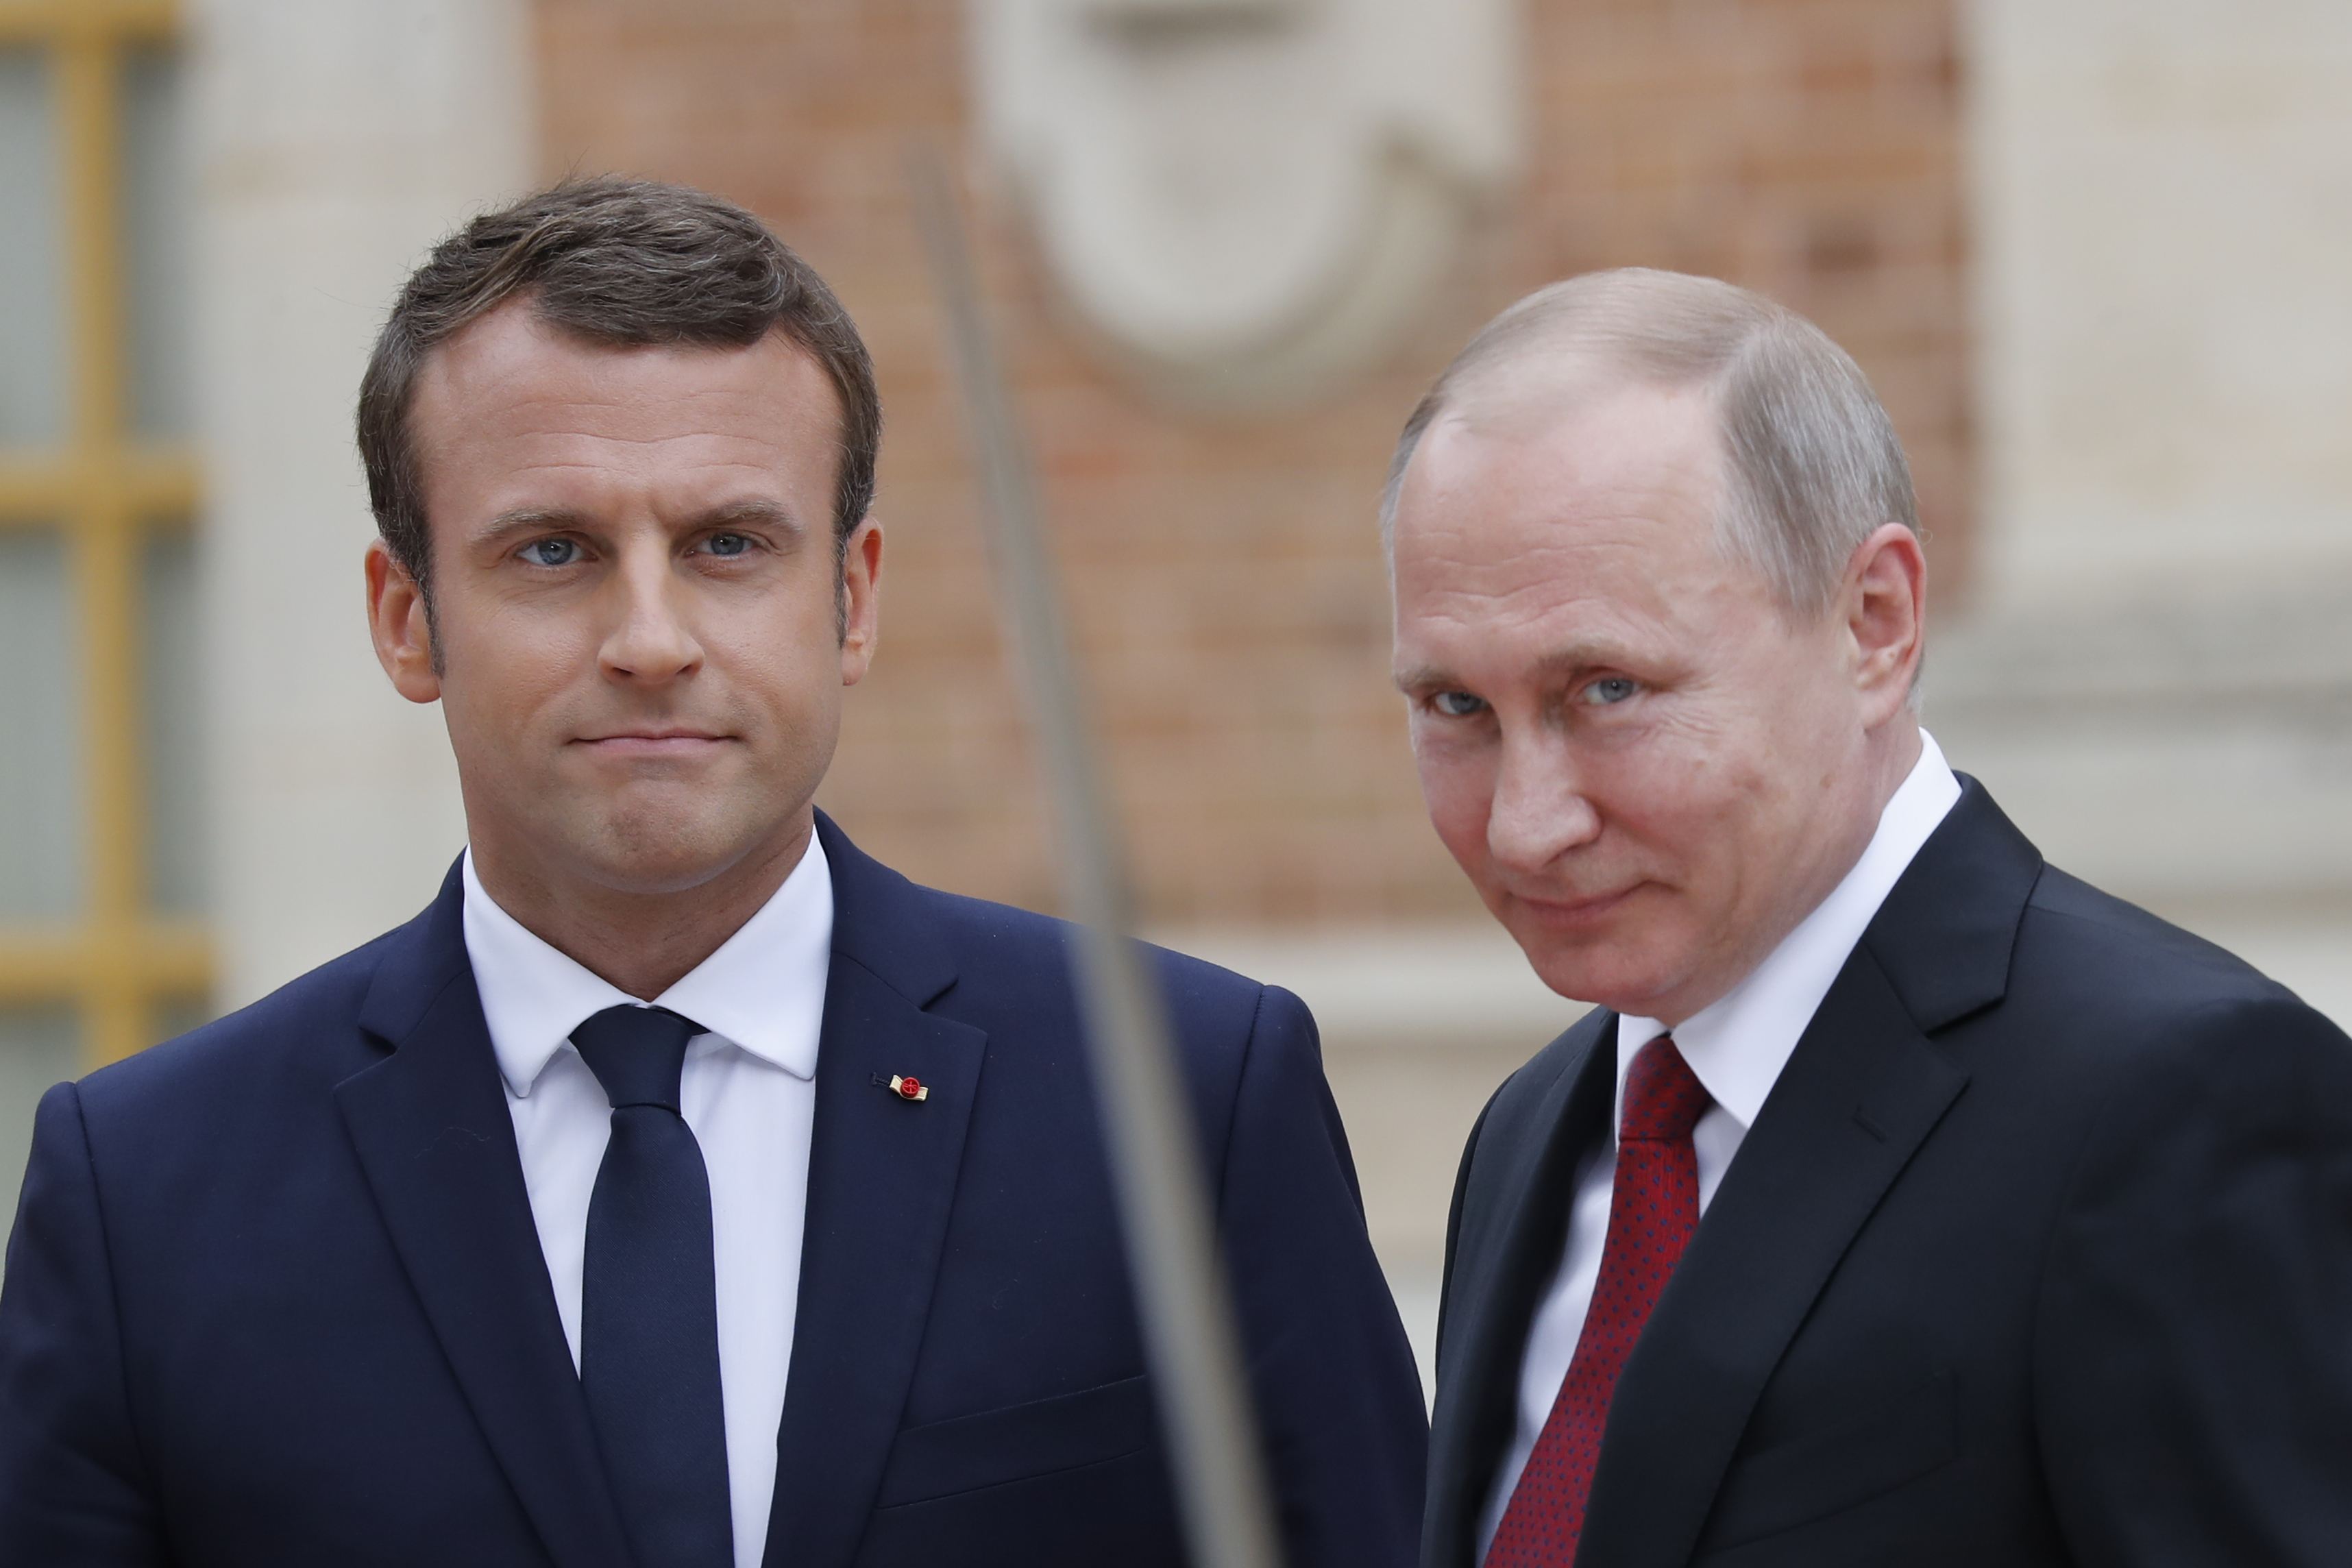 ¿Amenaza? Putin felicita a Macron por su reelección en Francia y le desea “buena salud”